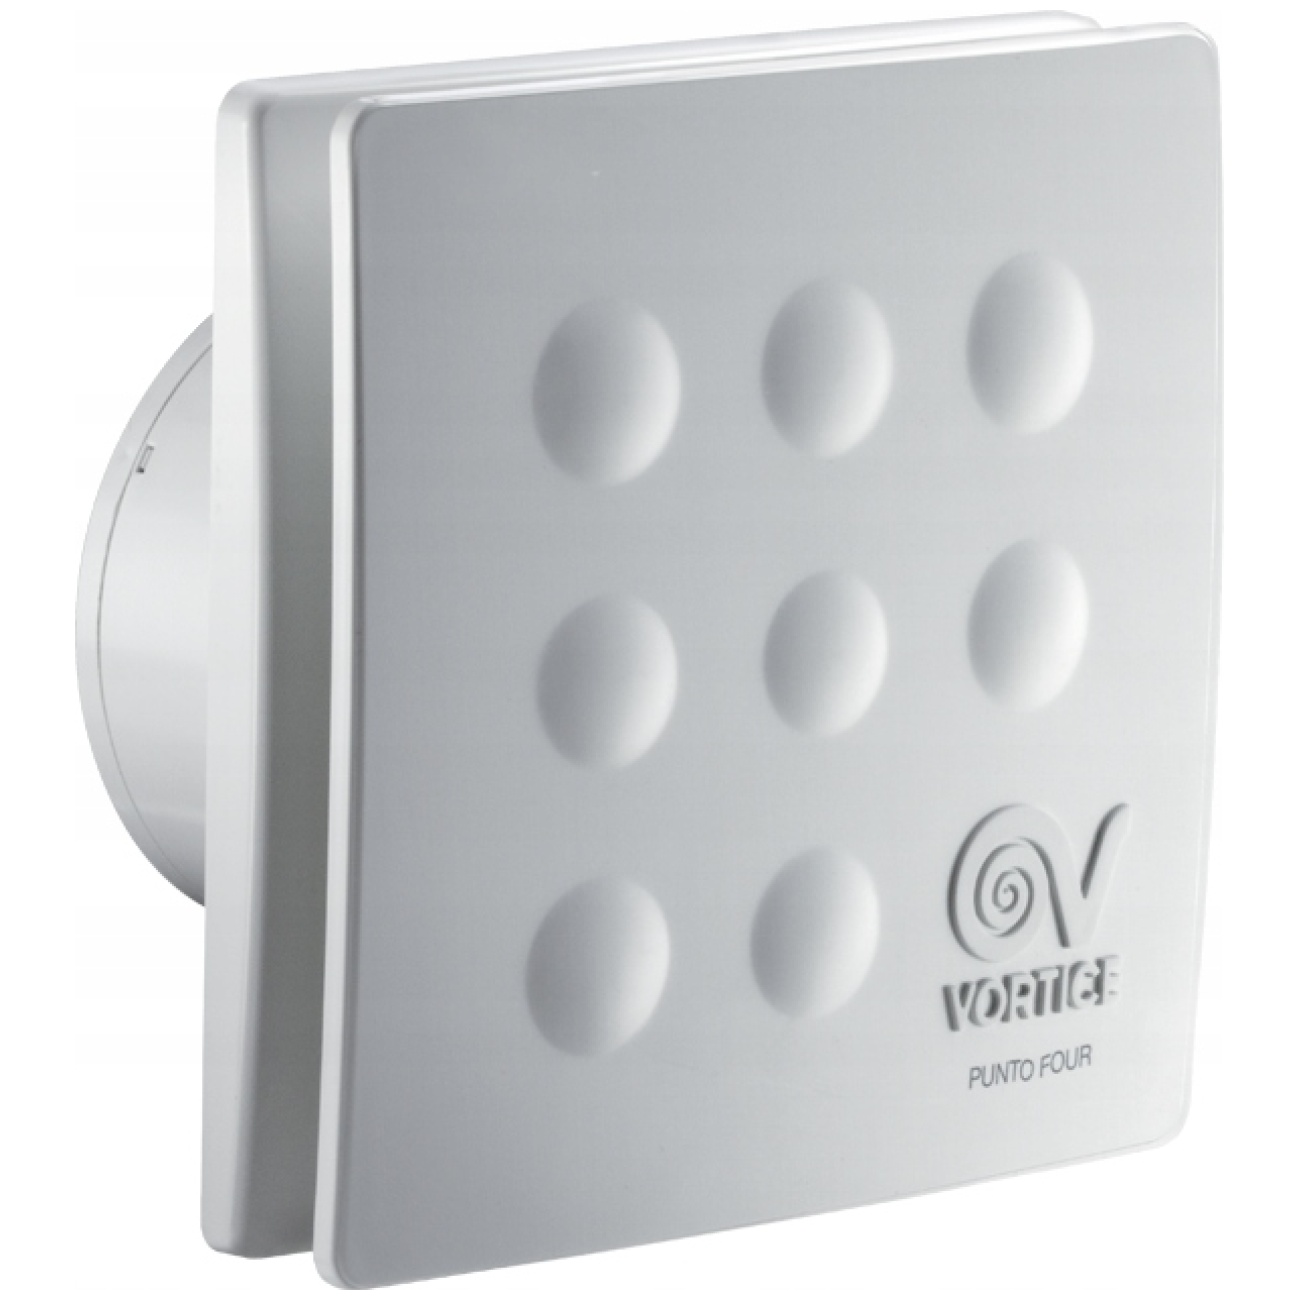 Wentylator łazienkowy ścienny sufitowy cichy i wydajny 90mm - Vortice Punto Four MFO 90/3,5"